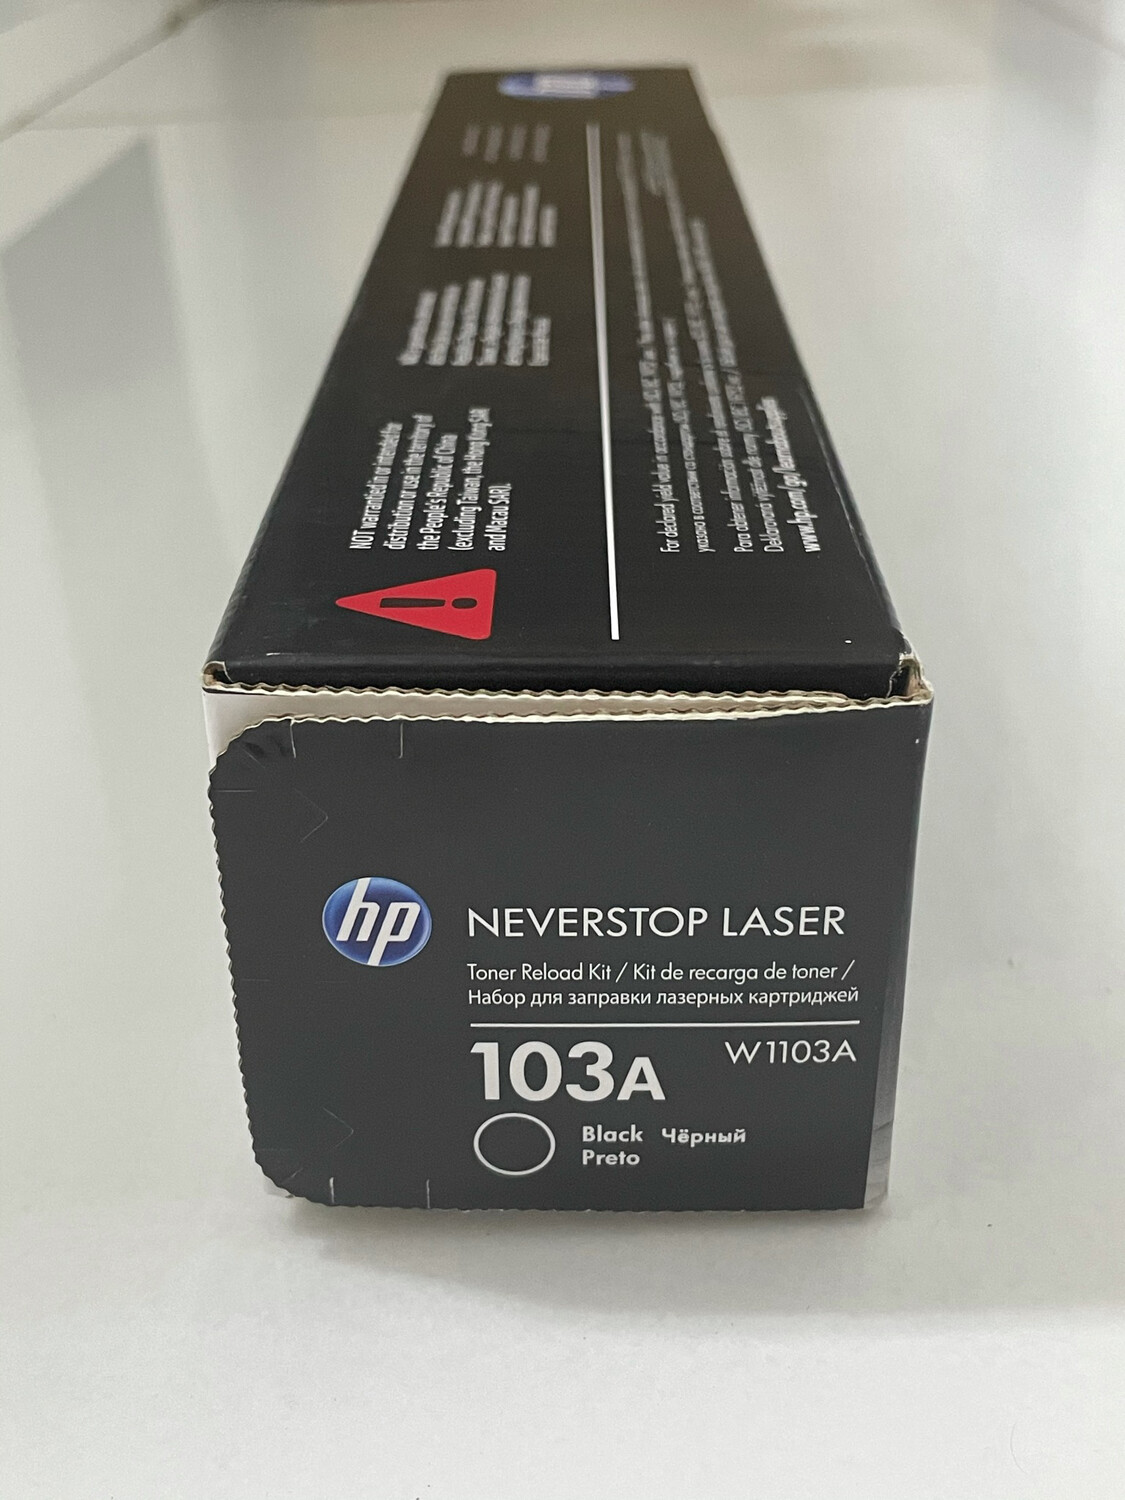 HP W1103A 103A Laser Toner Reload Kit - Rs.790